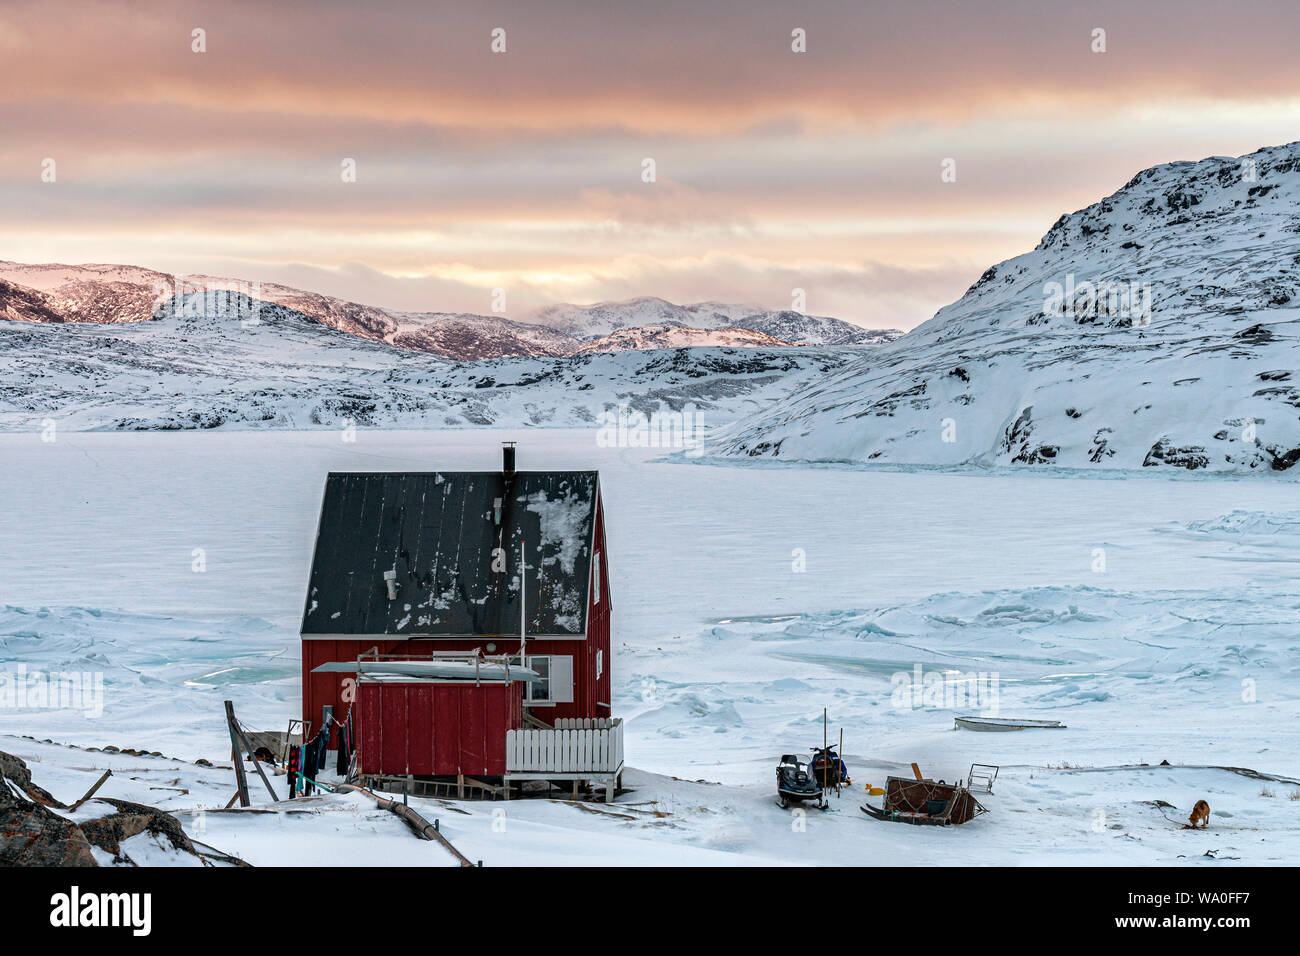 La maison d'un chasseur inuit dans le minuscule de règlement, Rodebay Groenland ouest Banque D'Images